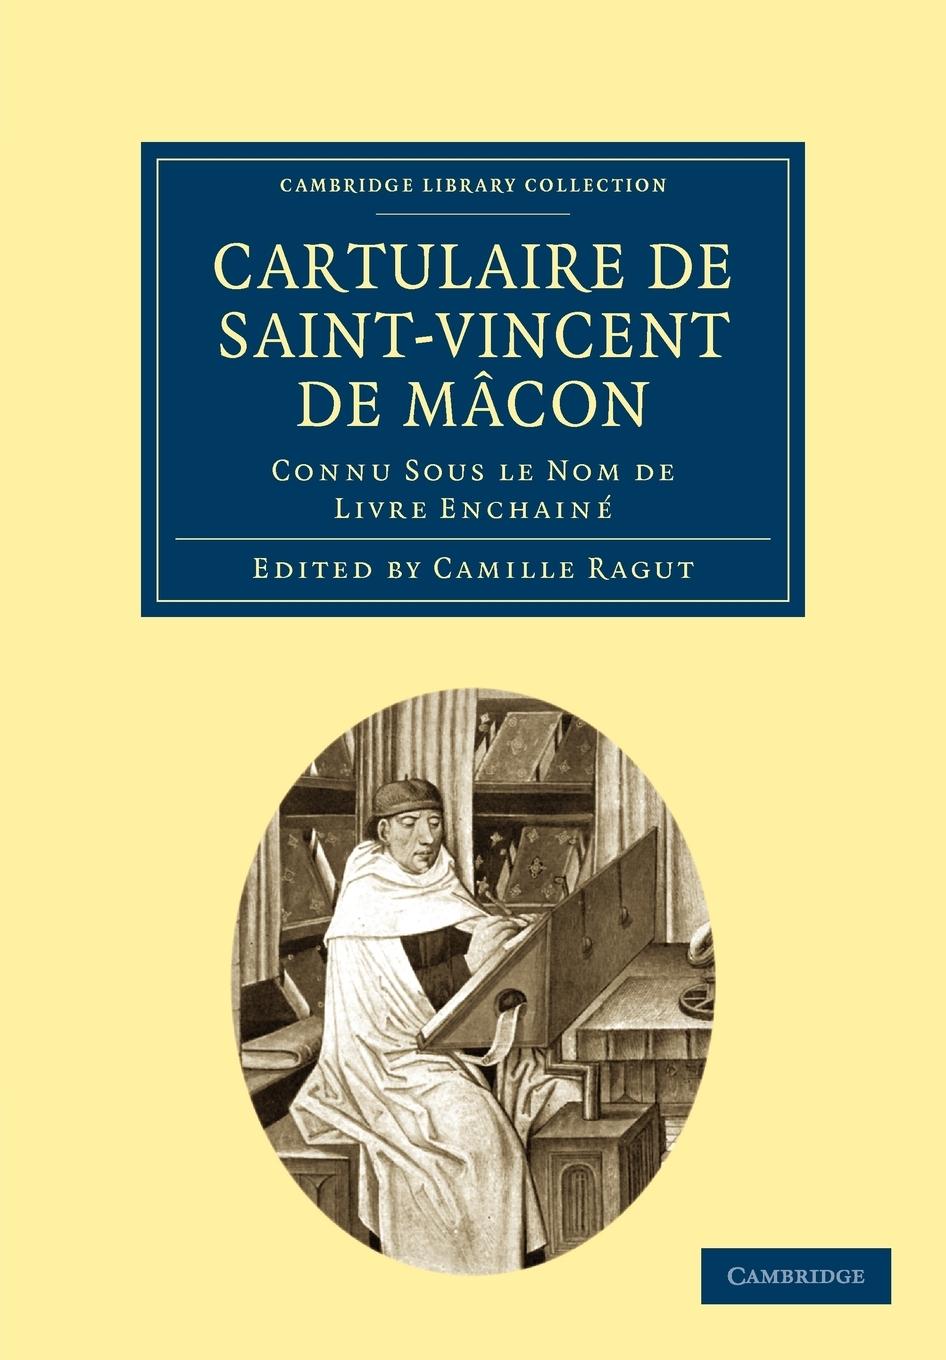 Cartulaire de Saint-Vincent de Macon - Ragut, Camille